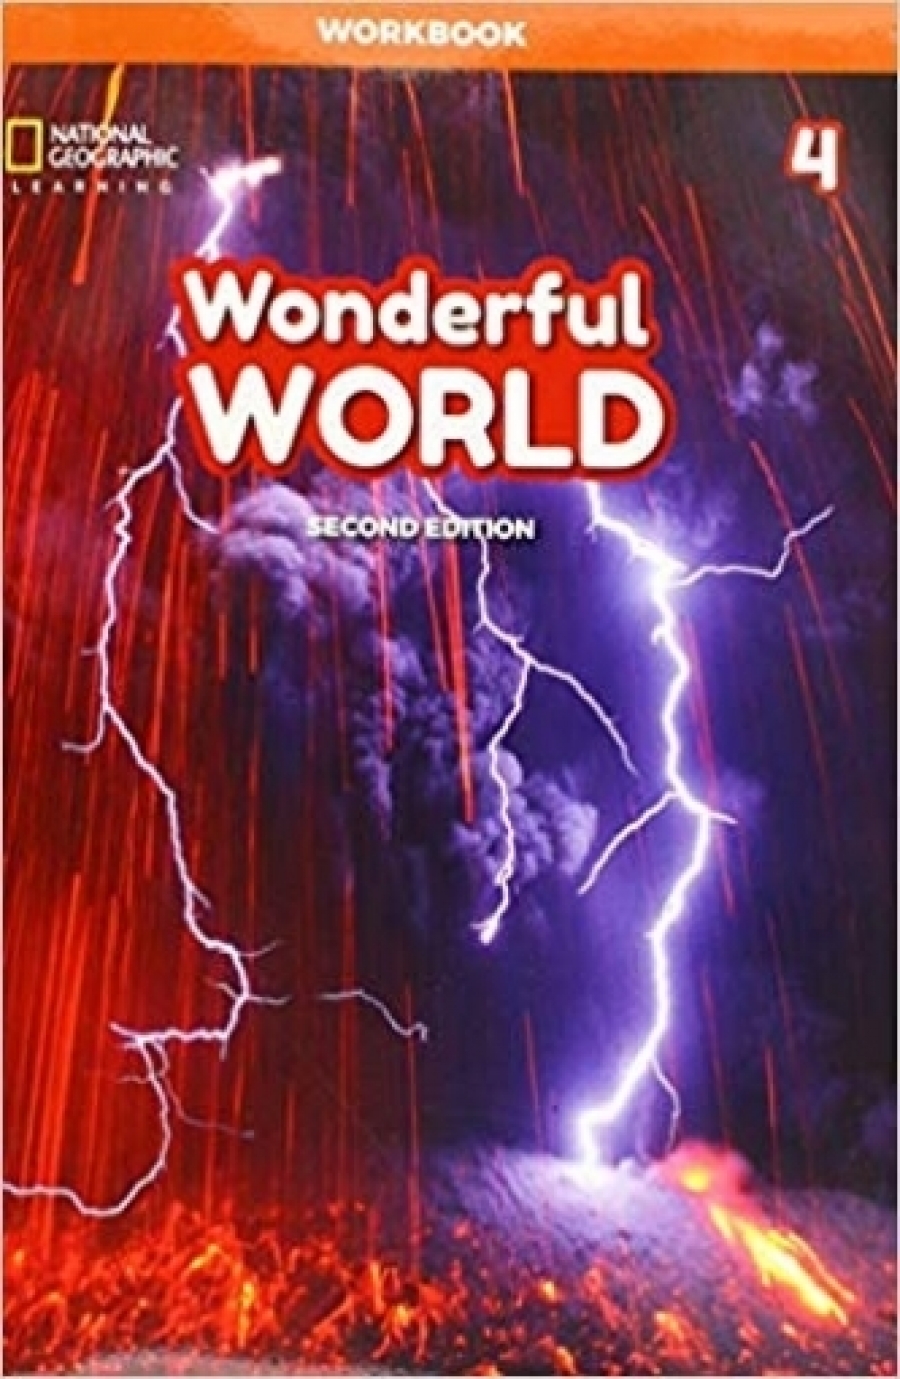 Wonderful World 4: Workbook 